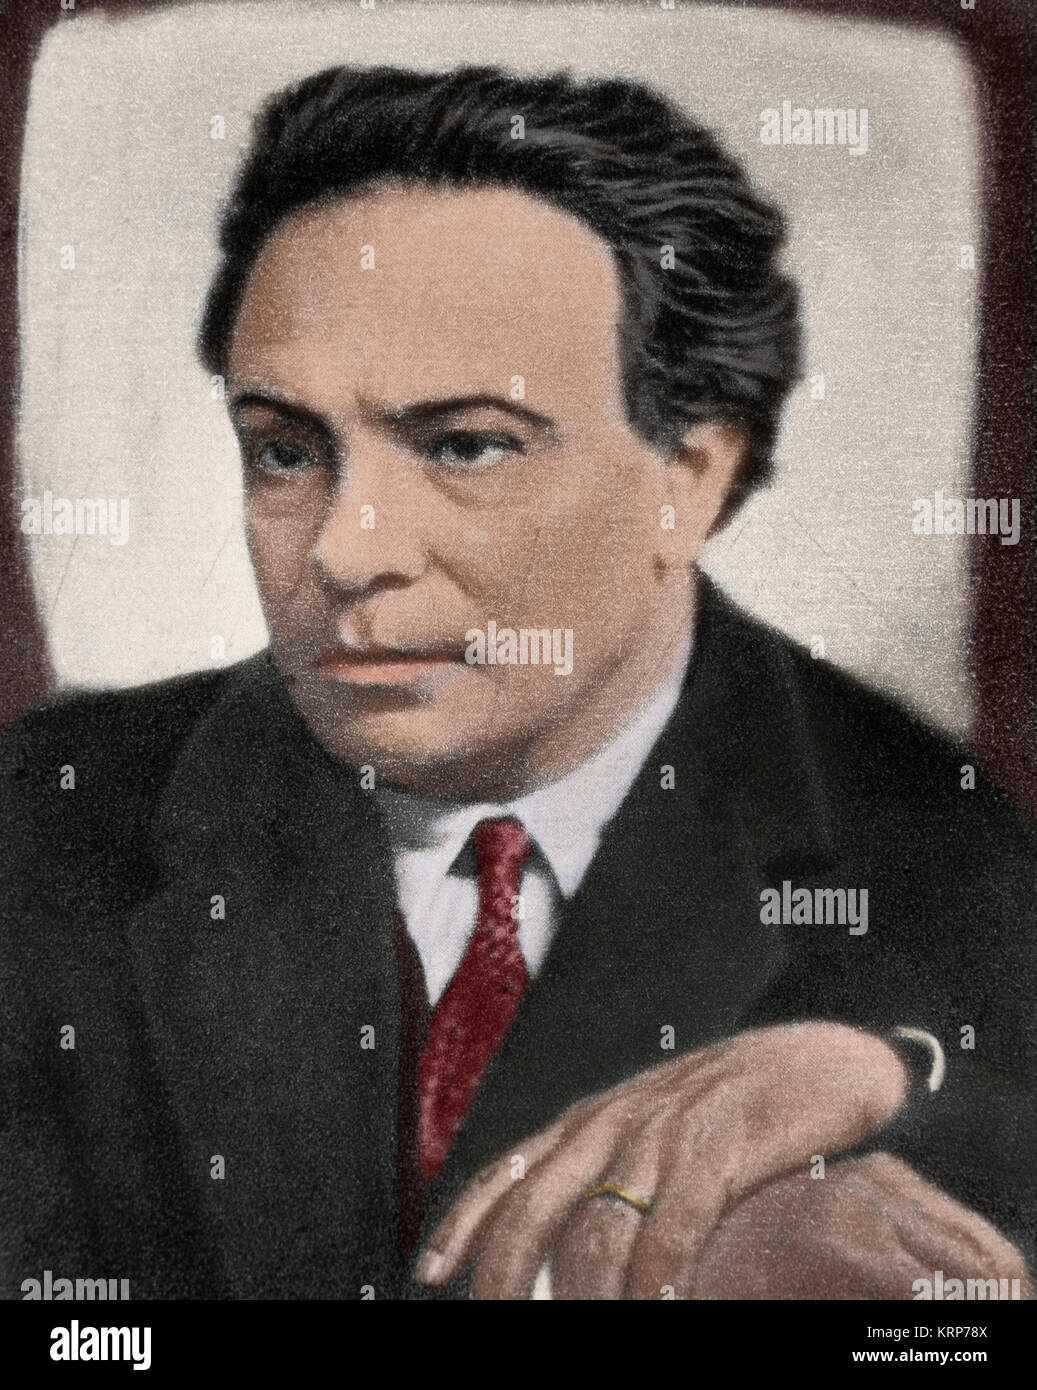 Ottorino Respighi (1879-1936). Italienischer Komponist, Violinist und Musikwissenschaftler. Porträt. Fotografie. Gefärbt. Stockfoto